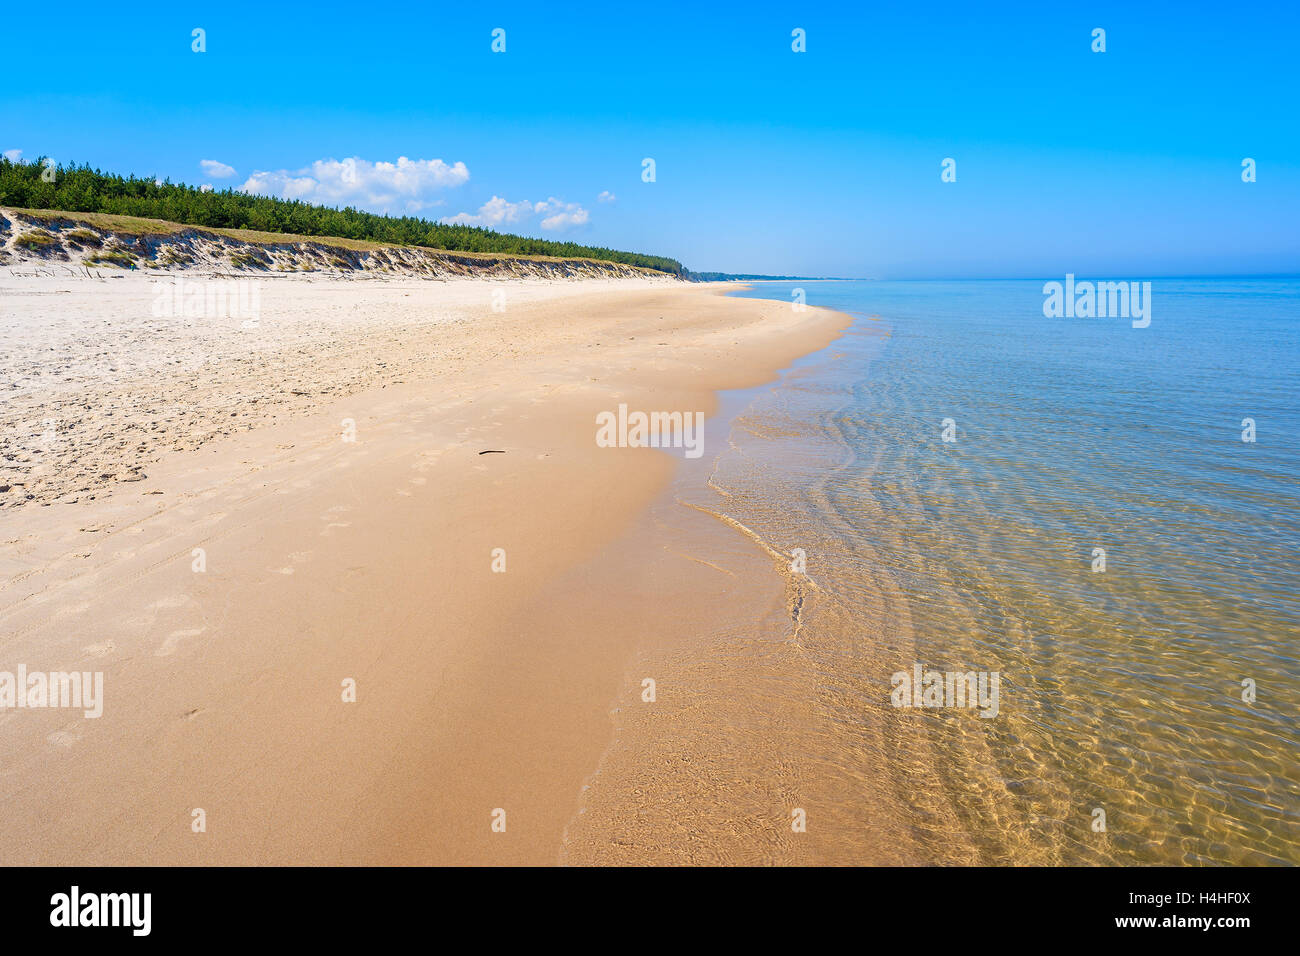 Sandy beach in Lubiatowo coastal village, Baltic Sea, Poland Stock Photo